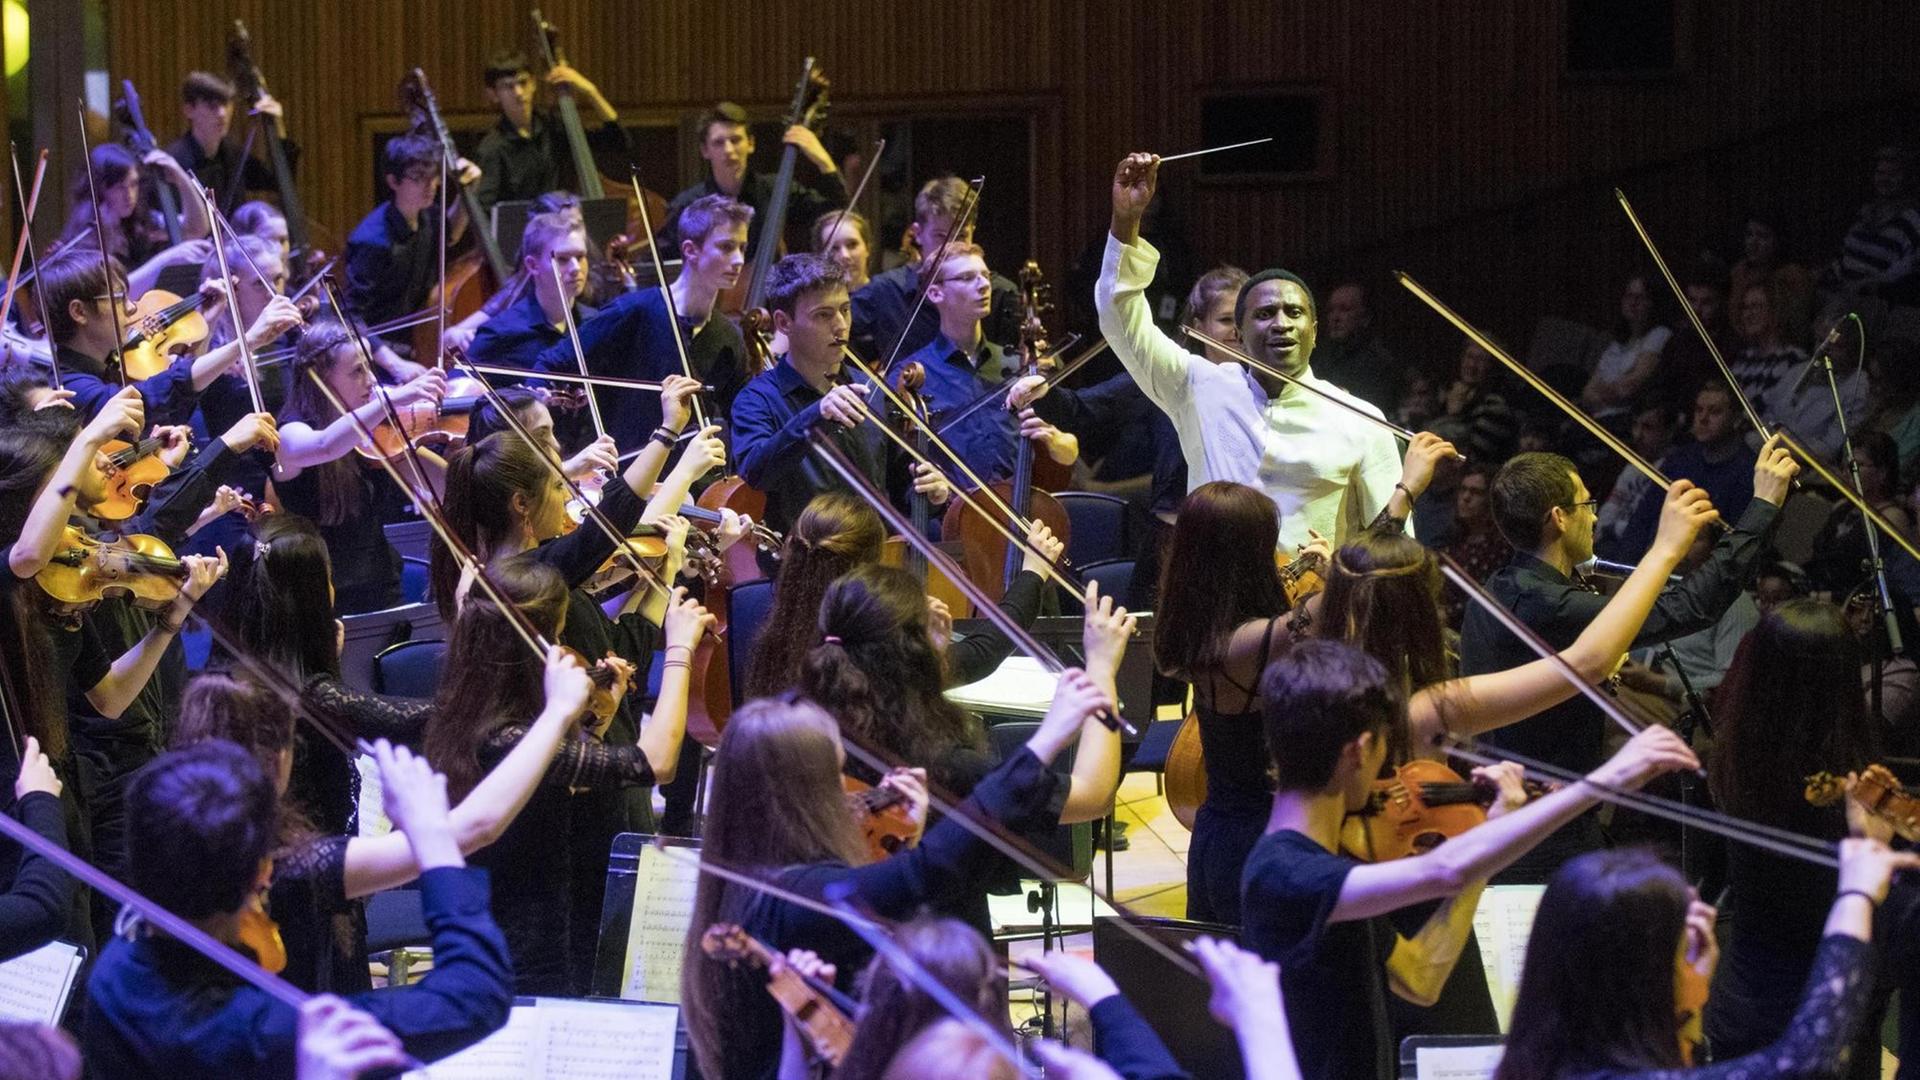 Das junge Orchester in großer Schlusspose, bei der alle Geigenbögen für einen Moment in der Luft gehalten werden.